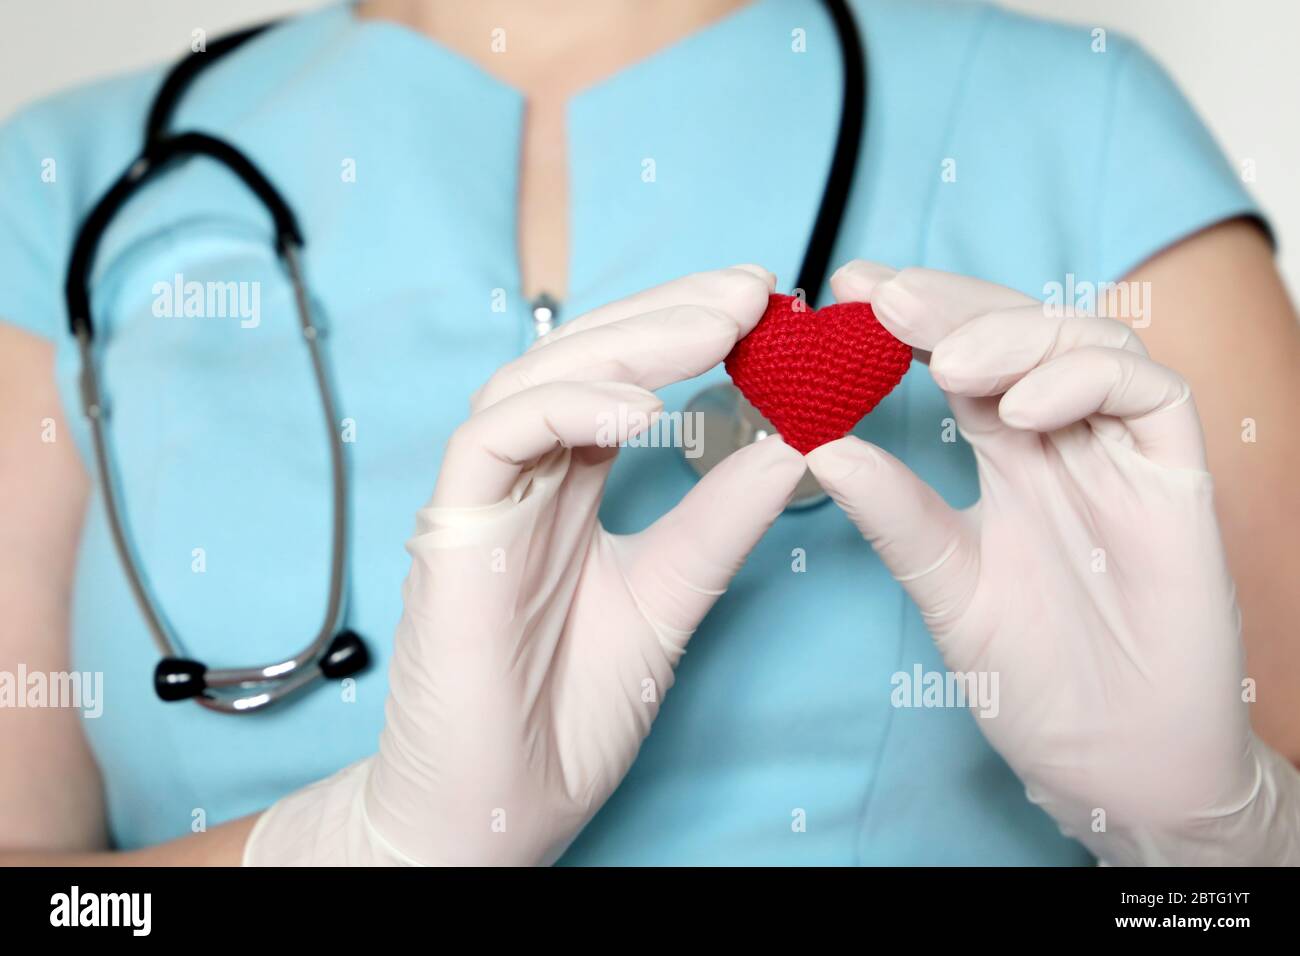 Femme médecin dans un masque médical tenant le cœur tricoté rouge dans les mains, sauvant des vies pendant une pandémie de coronavirus Covid-19. Cardiologue, donneur de sang Banque D'Images